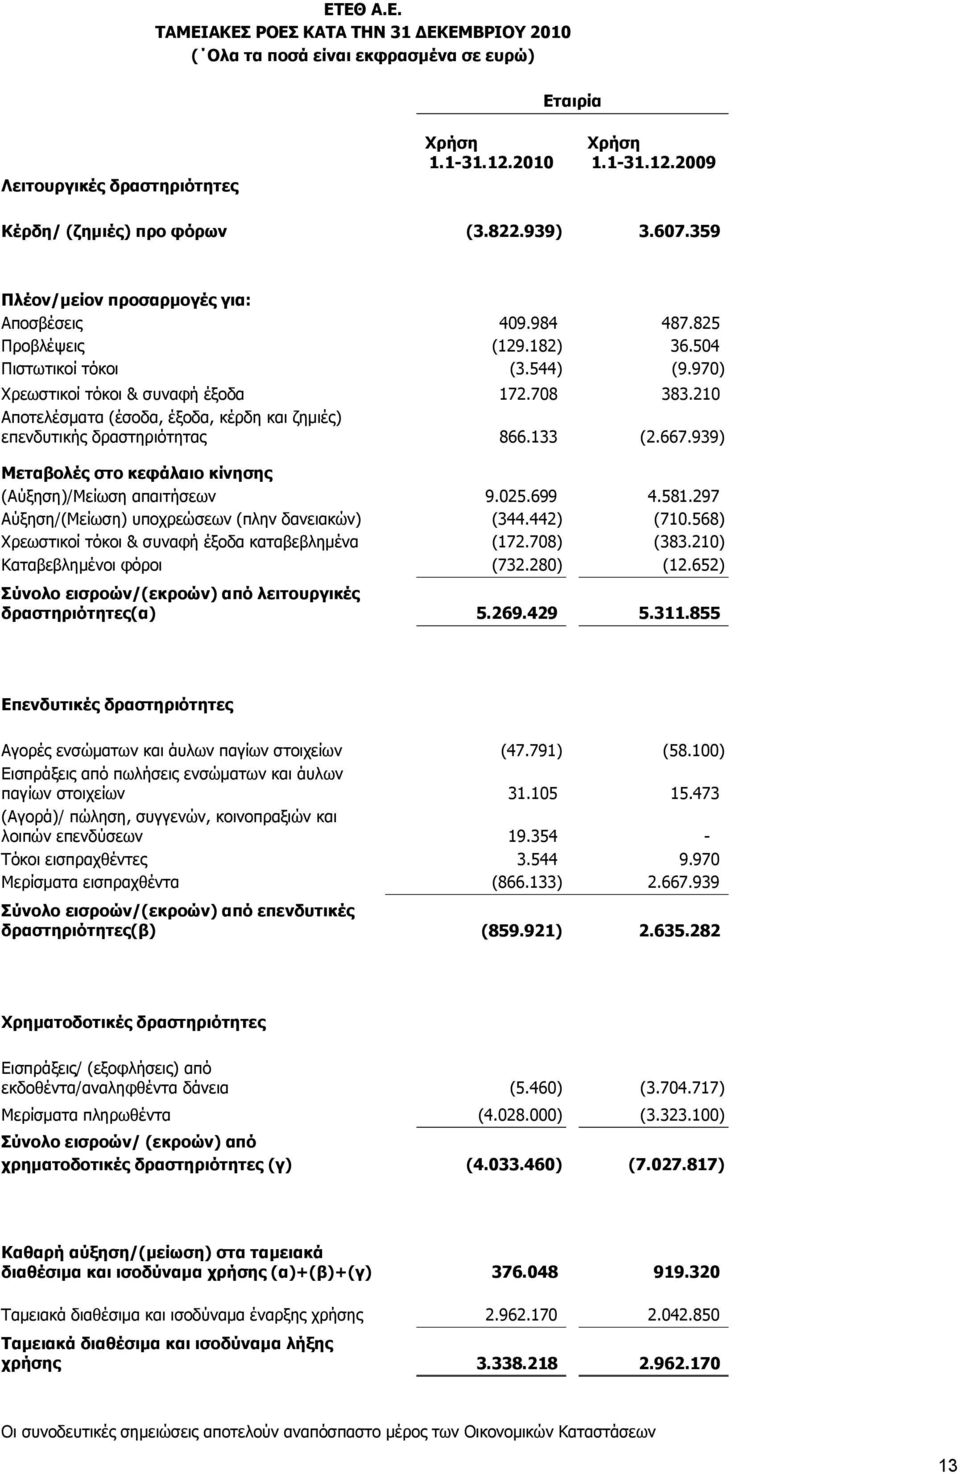 210 Αποτελέσματα (έσοδα, έξοδα, κέρδη και ζημιές) επενδυτικής δραστηριότητας 866.133 (2.667.939) Μεταβολές στο κεφάλαιο κίνησης (Αύξηση)/Μείωση απαιτήσεων 9.025.699 4.581.